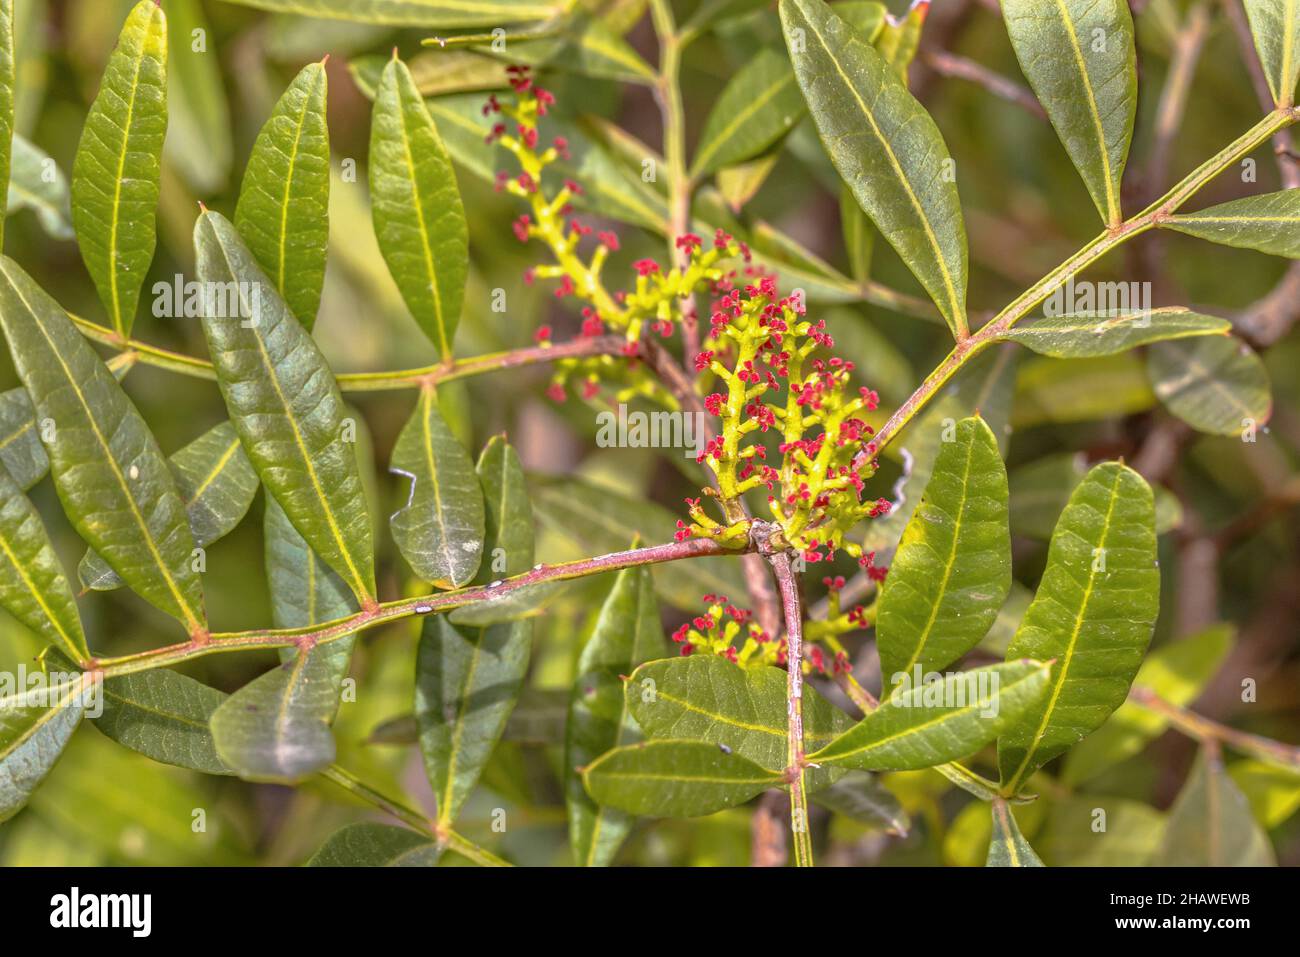 Mastix oder Lentisk (Pistacia lentiscus) Baum blüht mit roten Blüten. Extremadura, Spanien. Naturszene Europas. Stockfoto